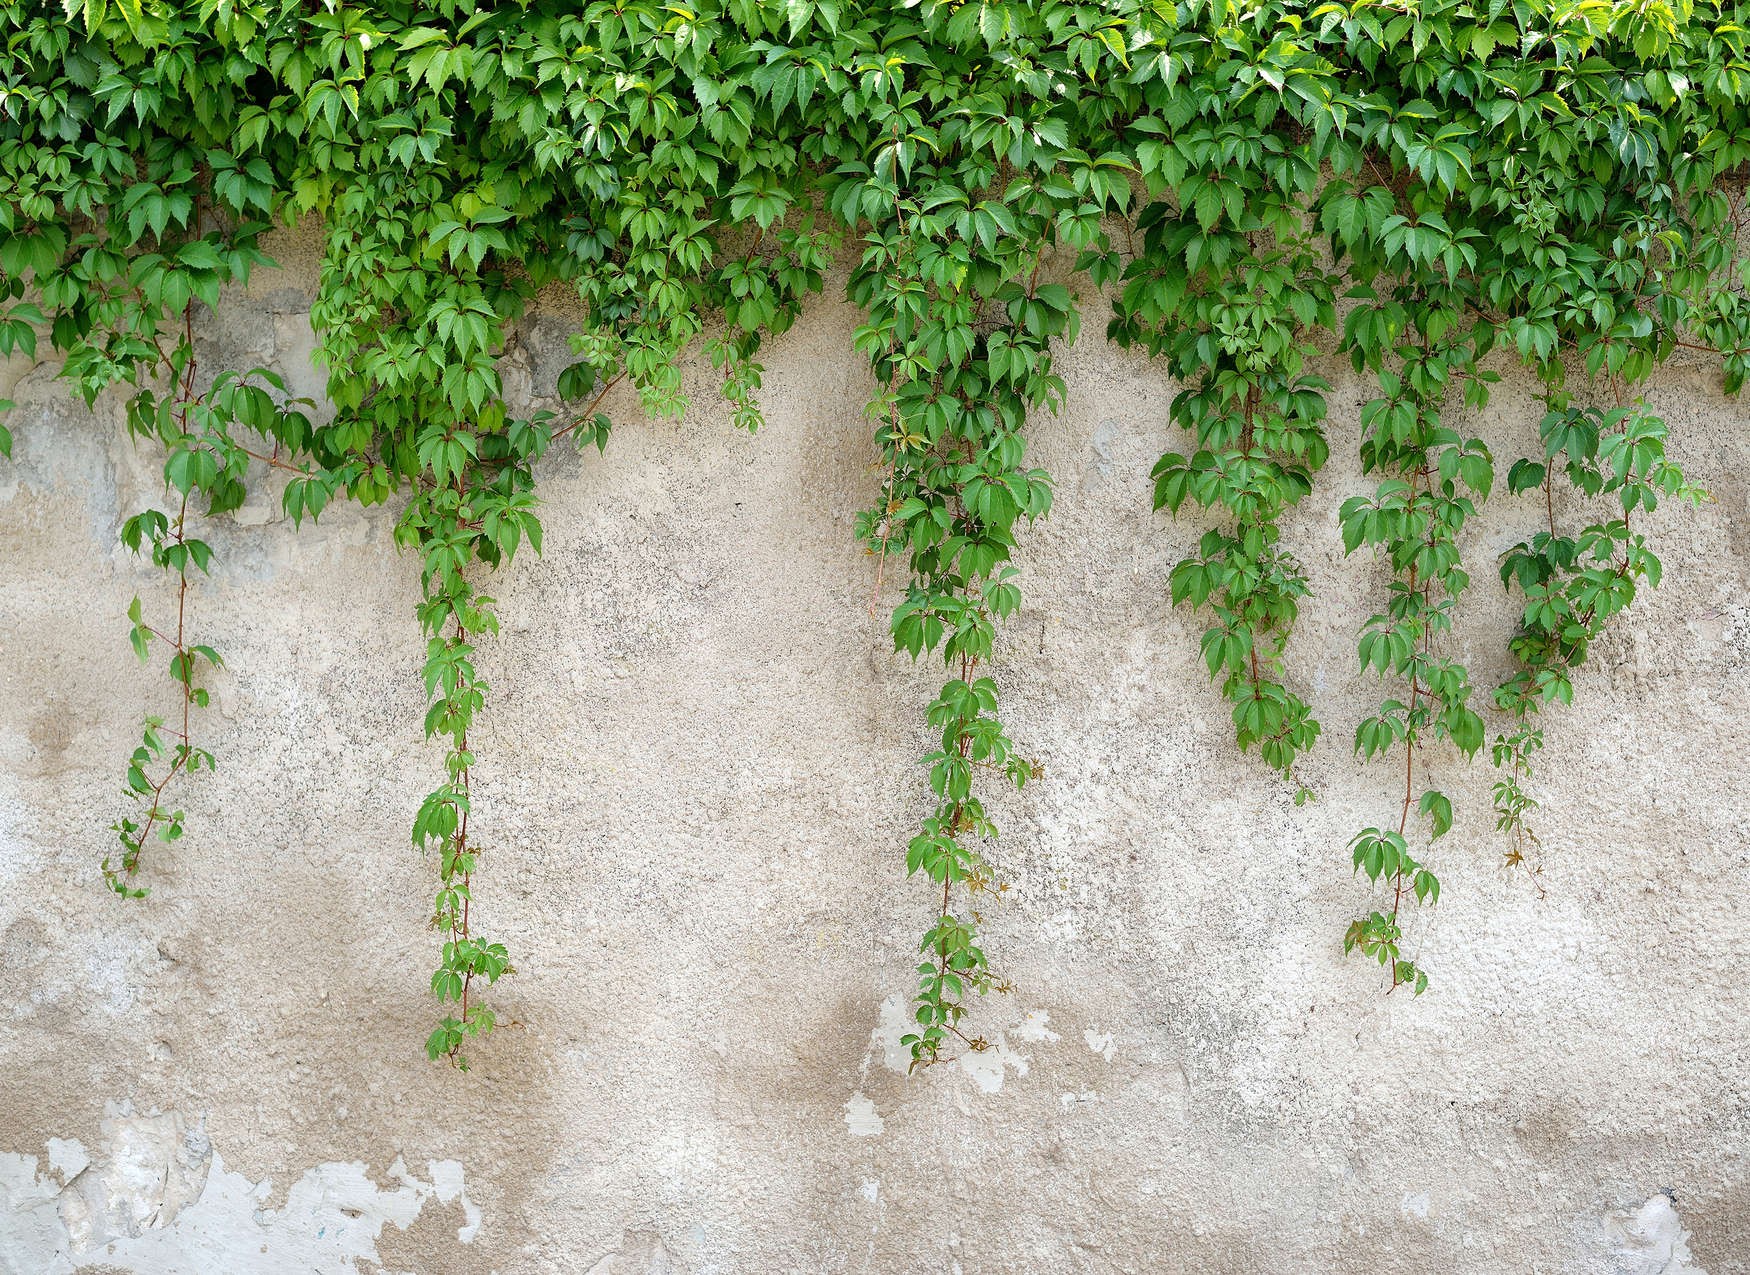             Muro de hormigón con zarcillos de hoja - Verde, Gris
        